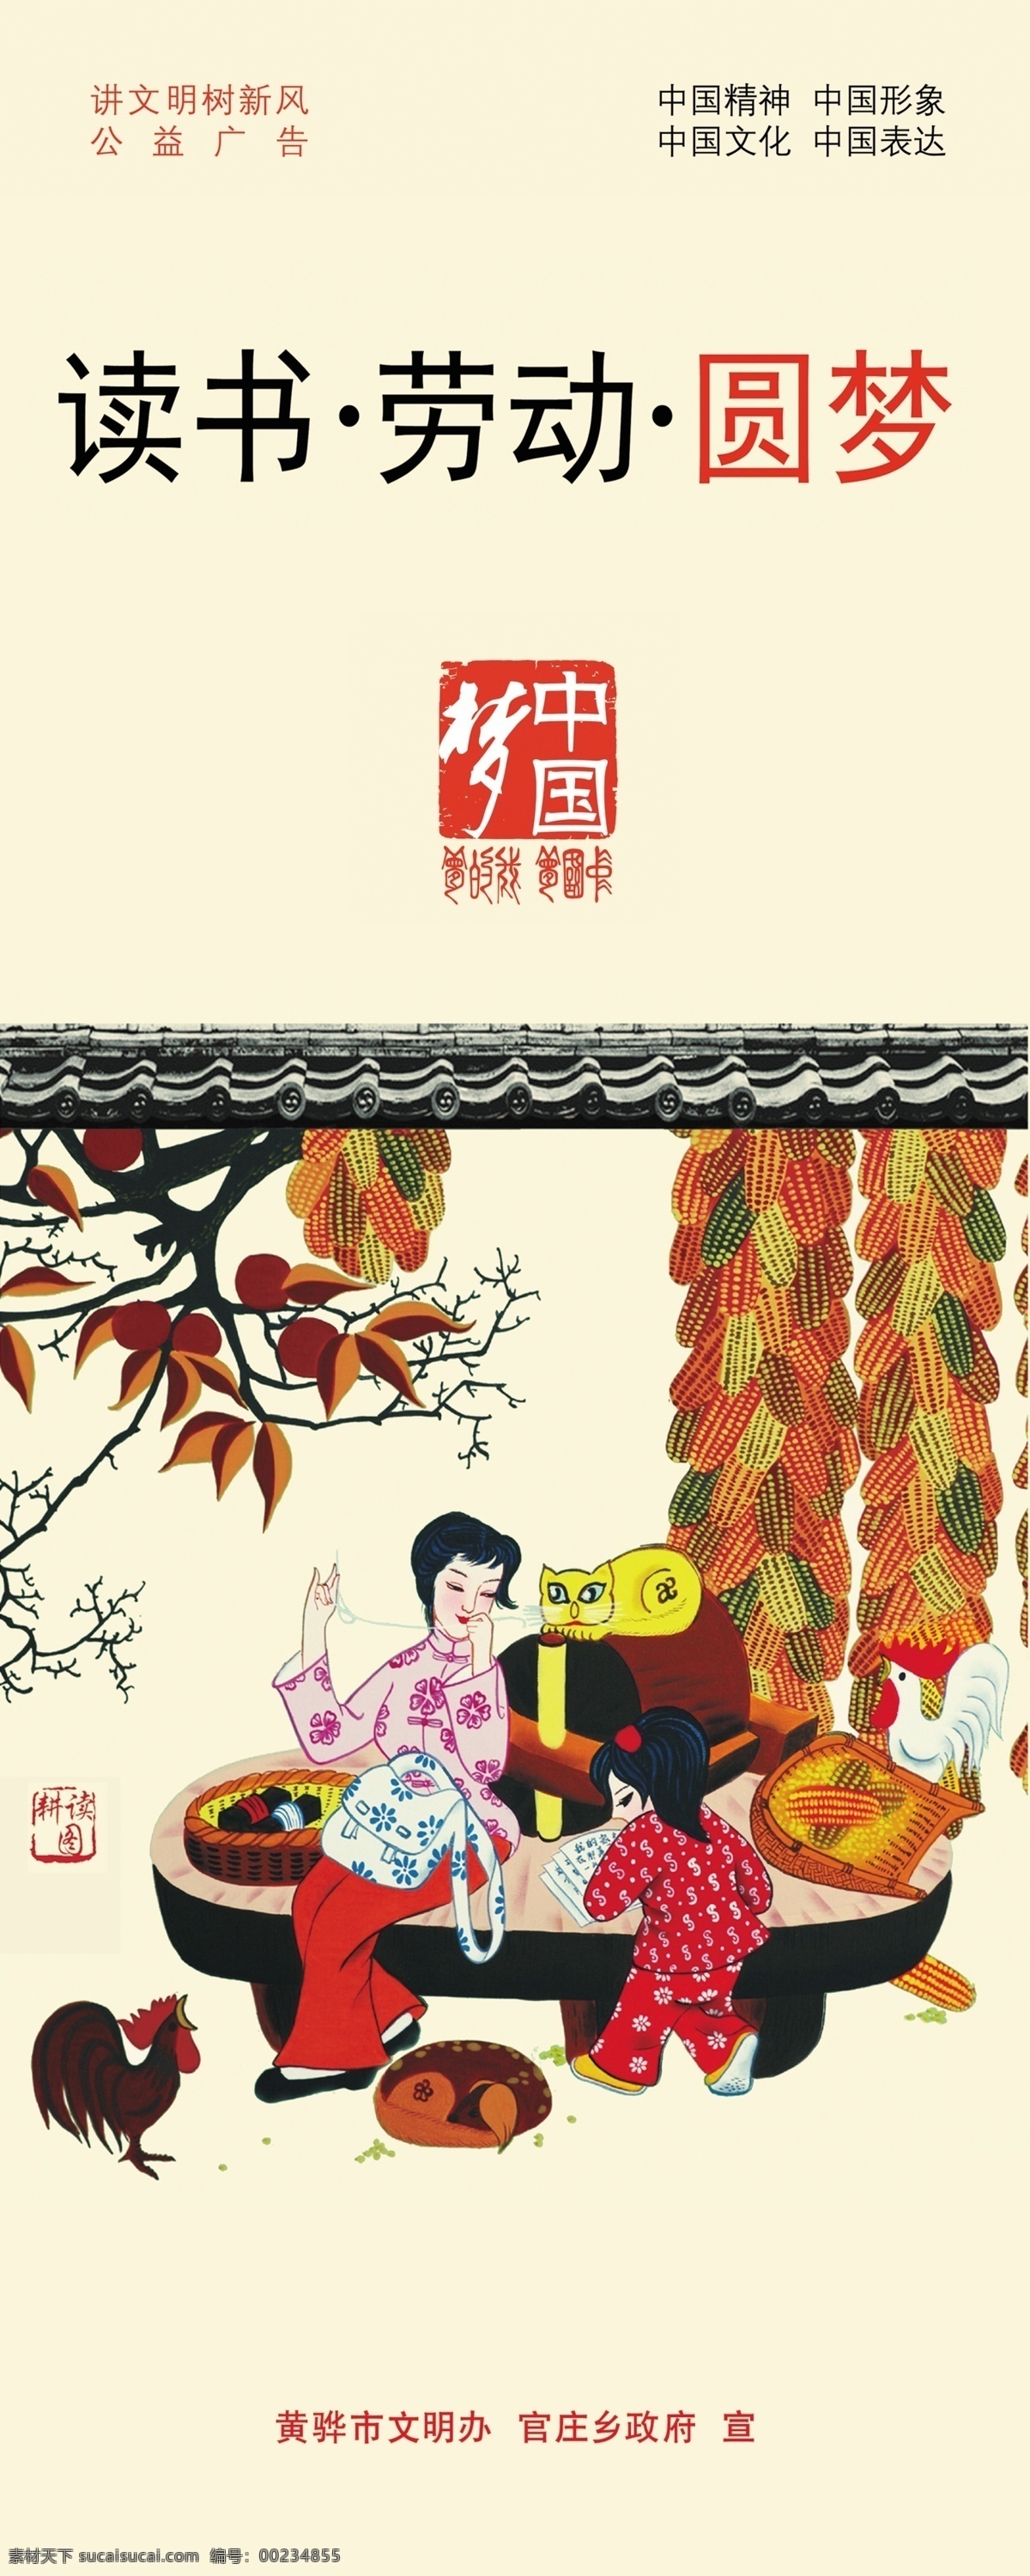 读书 劳动 圆梦 灯杆旗 宣传 文宣 中国传统文化